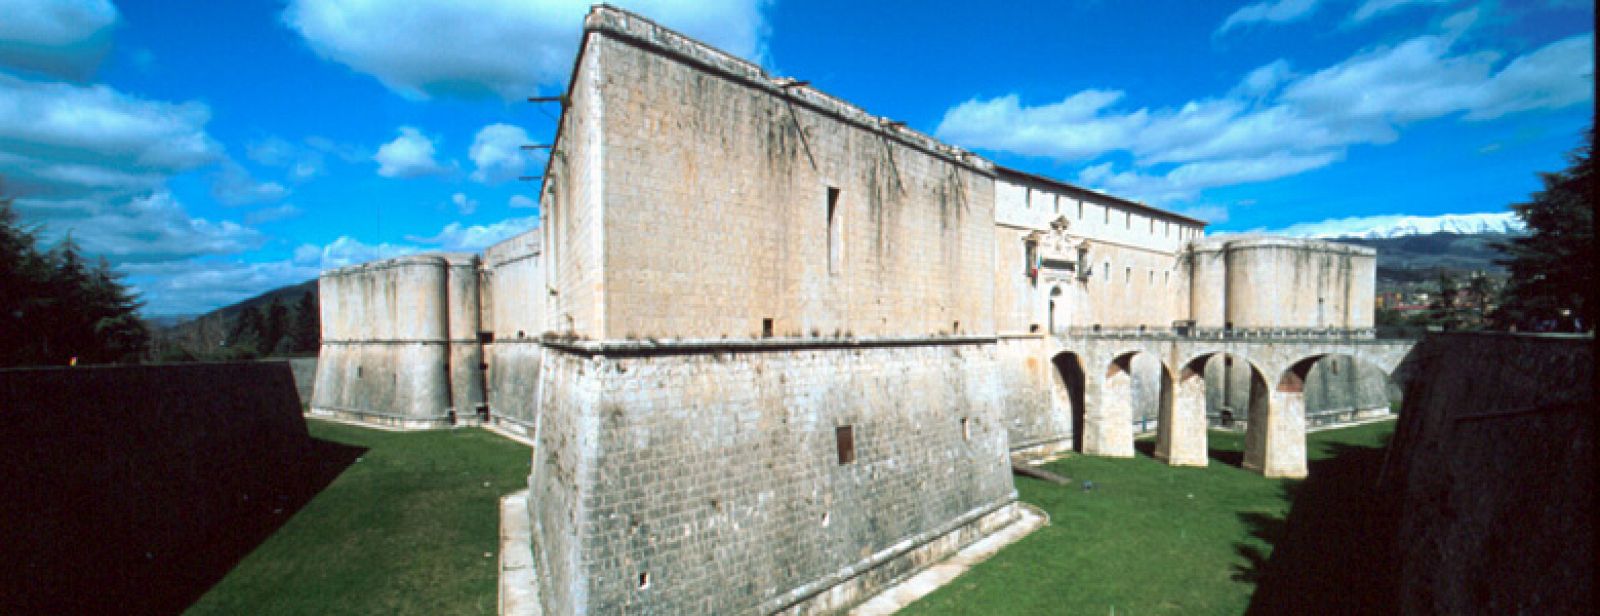 Imagen del Castello de L'Aquila, anterior al terremoto del pasado lunes.